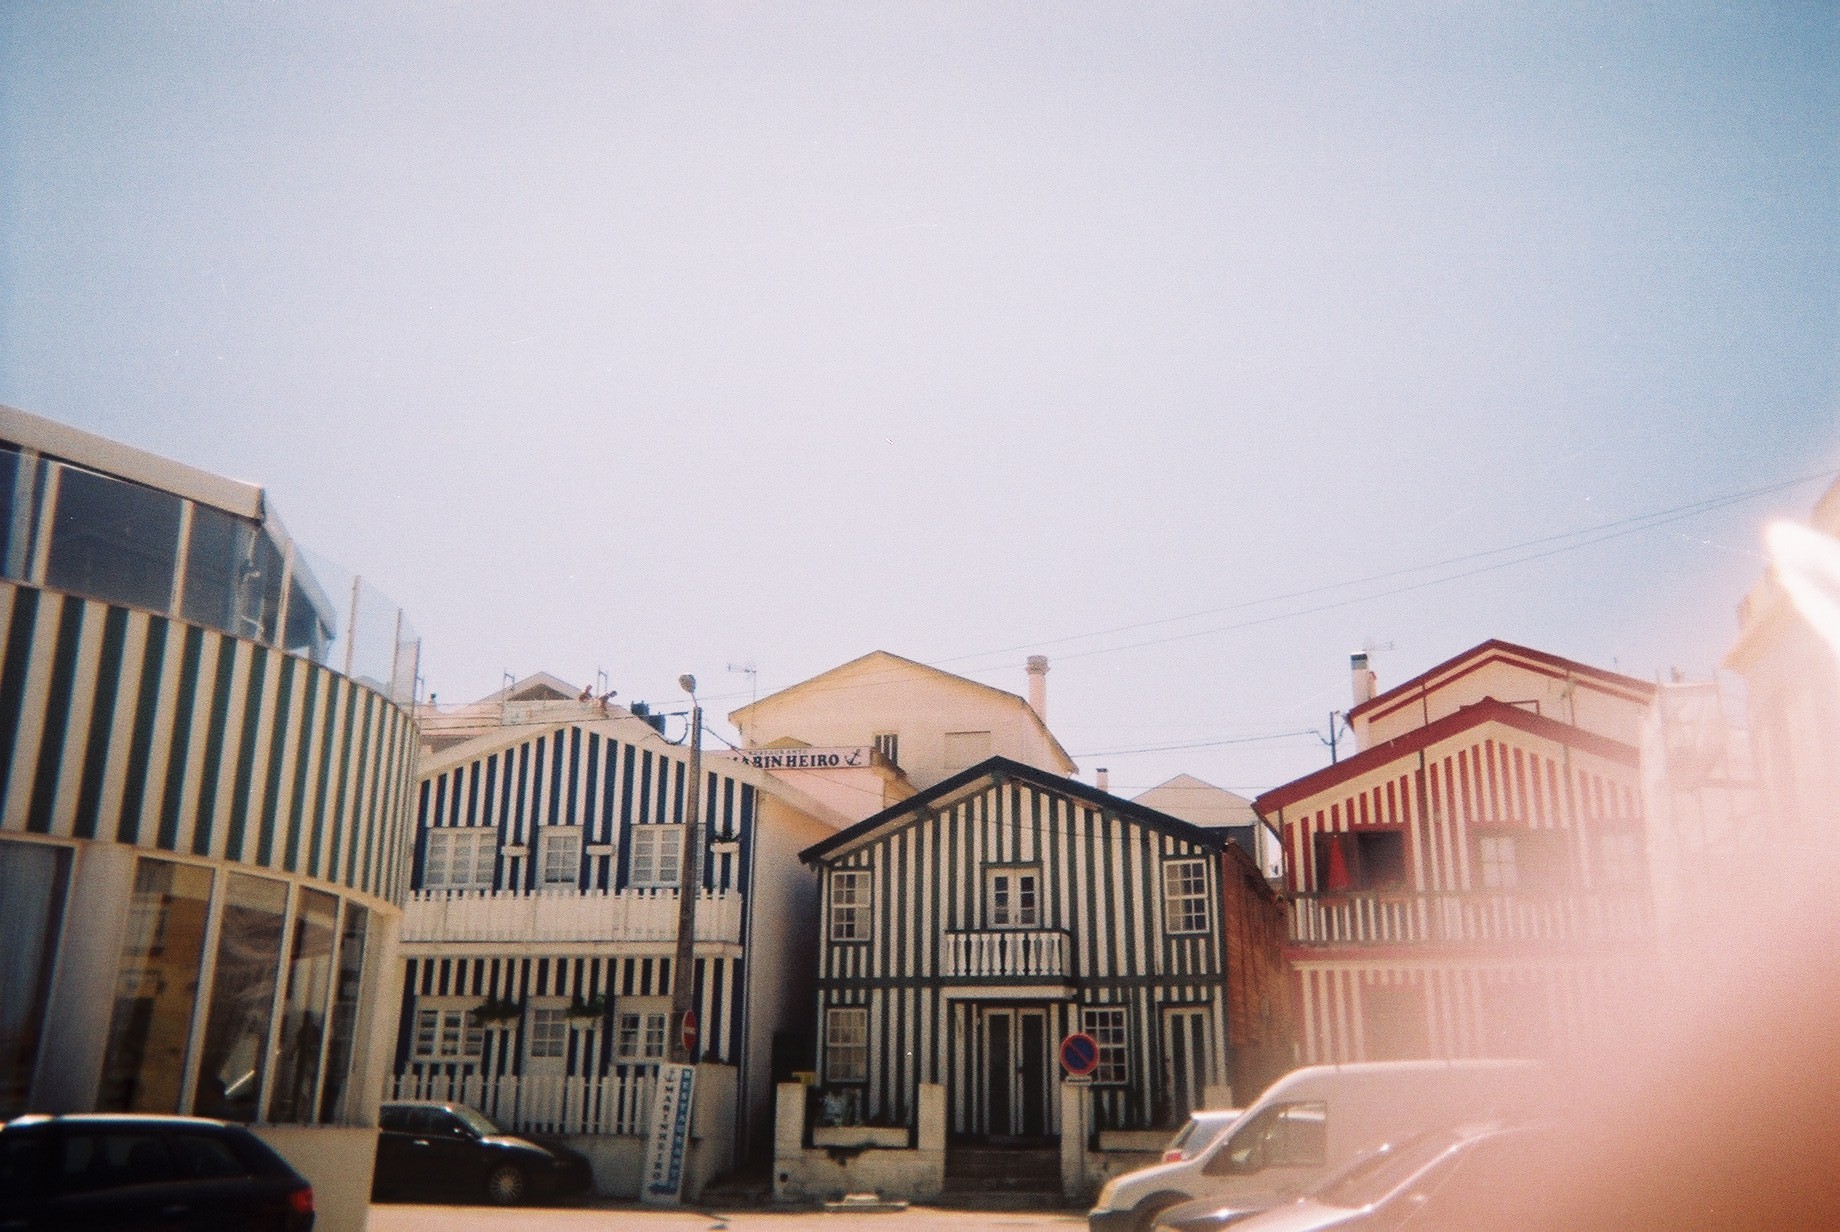 Casas da Costa Nova, Aveiro | wide image